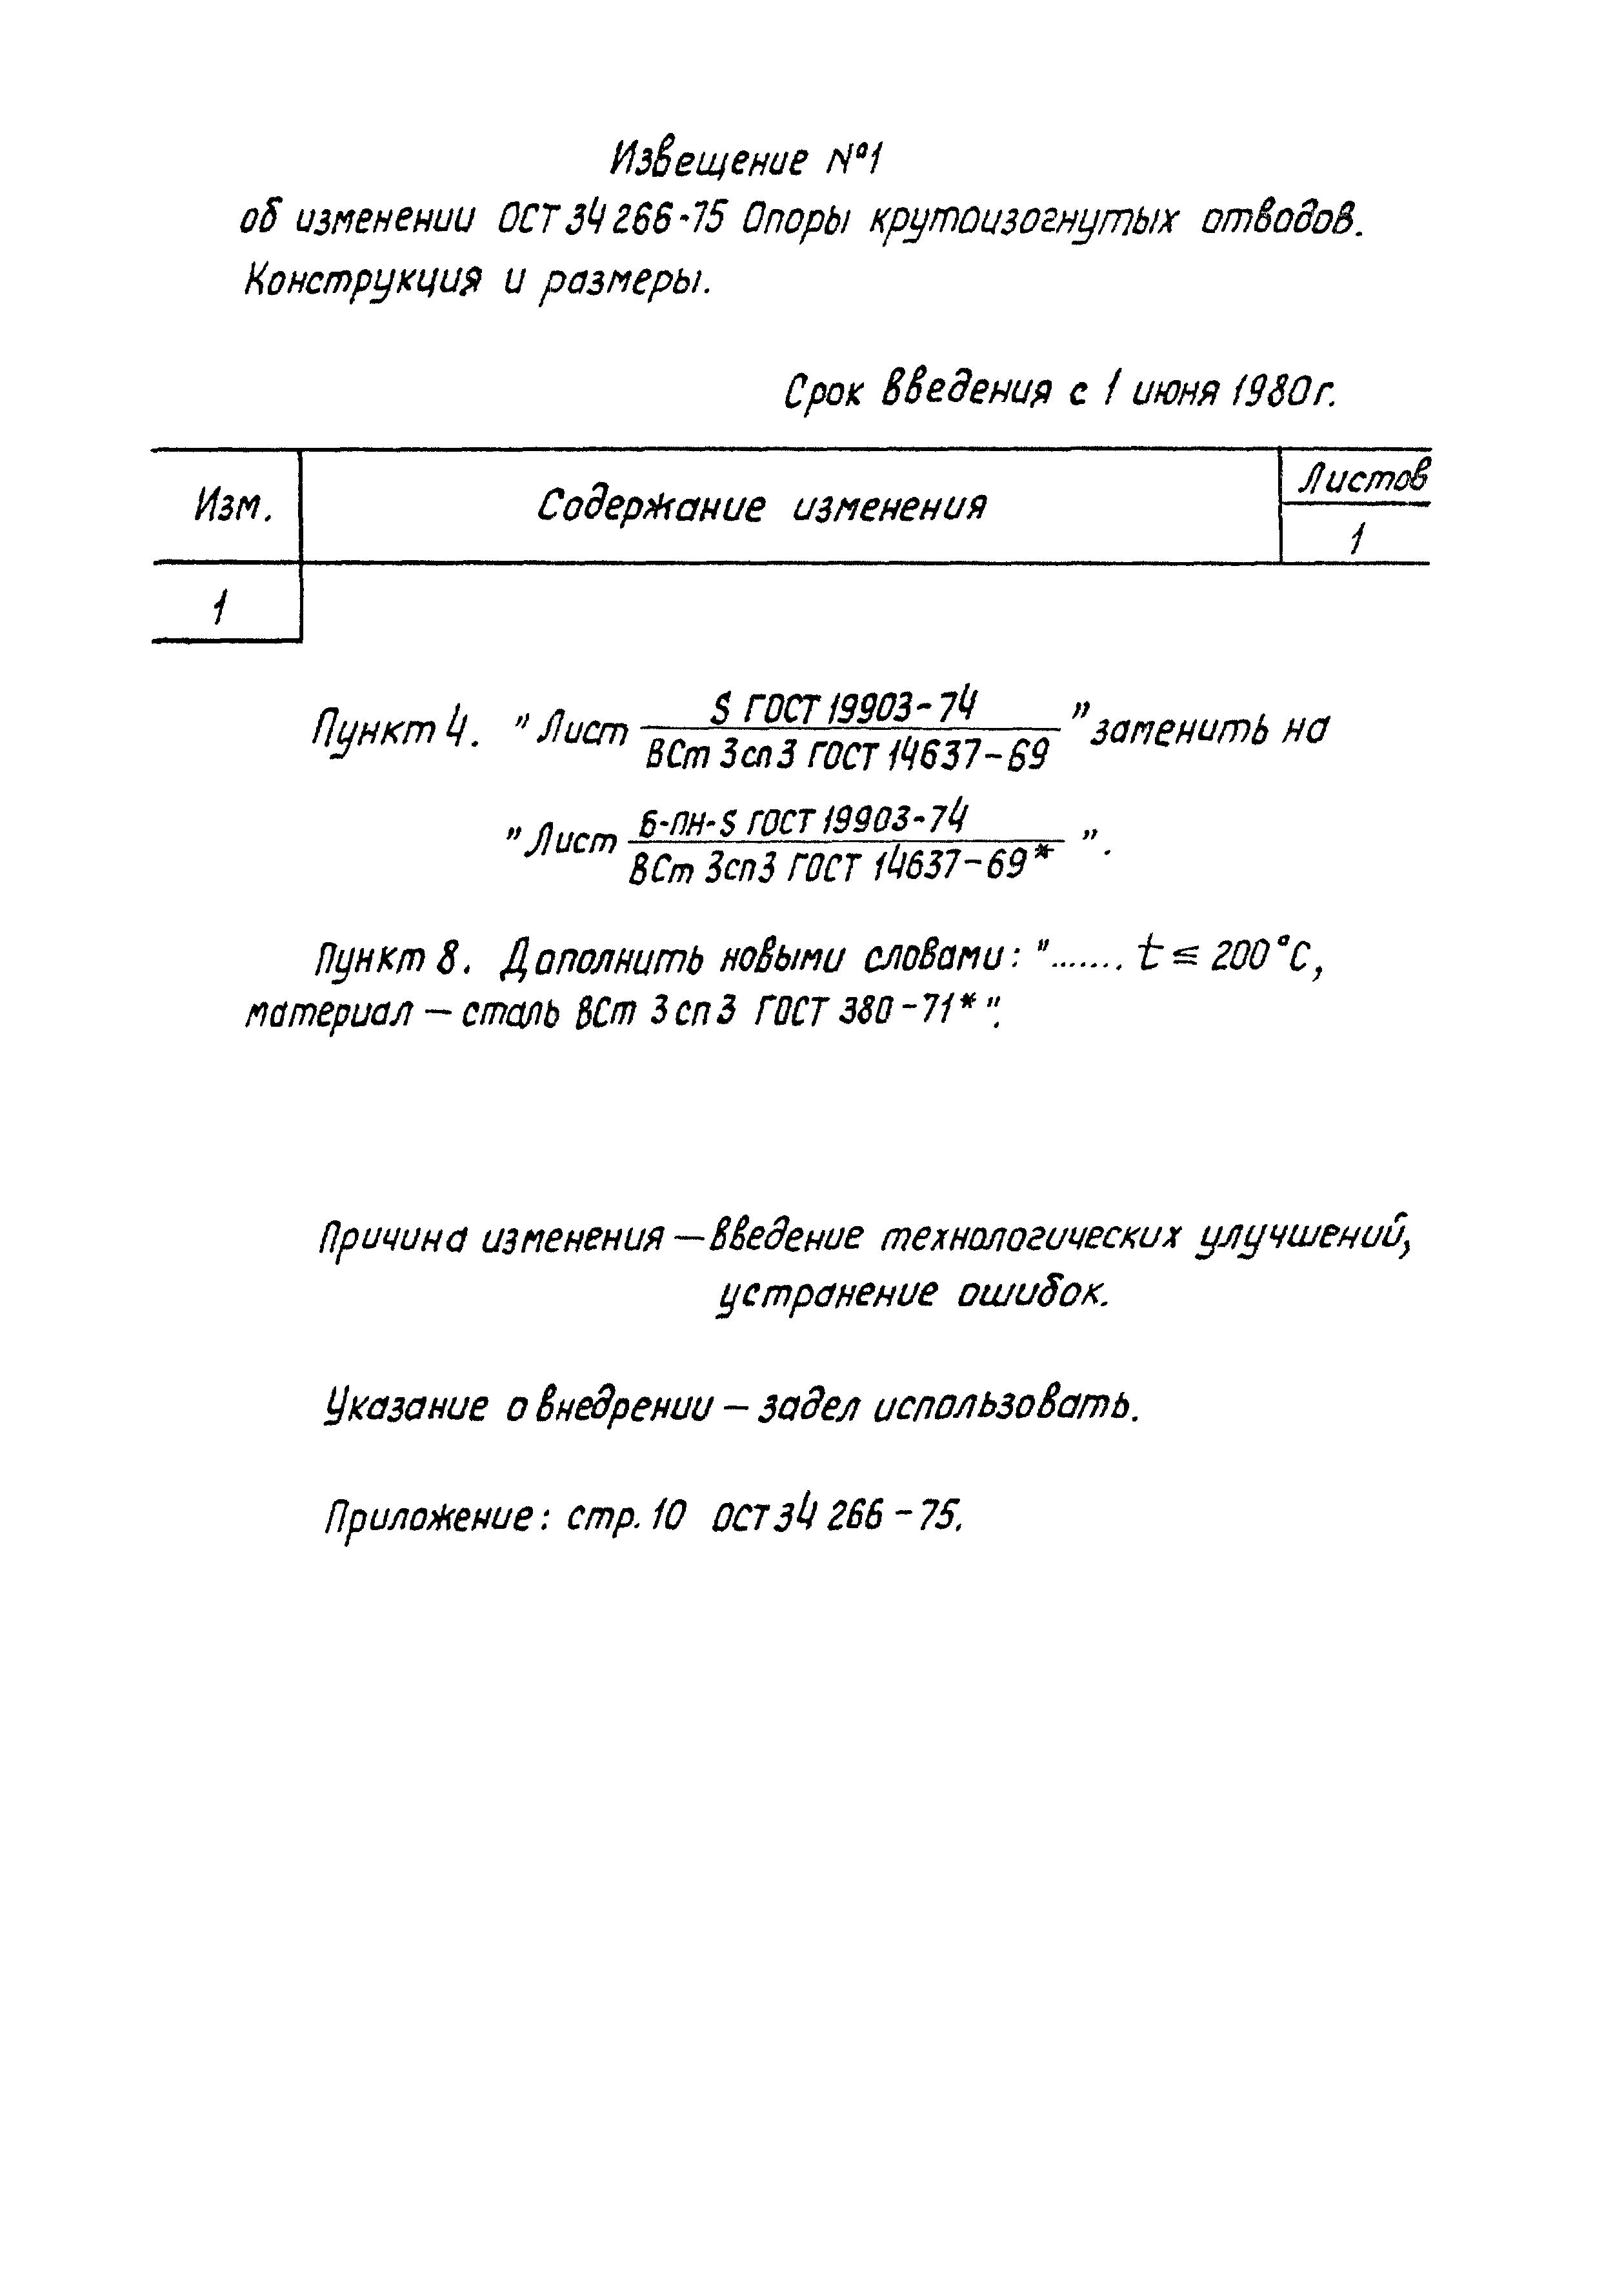 ОСТ 34-266-75